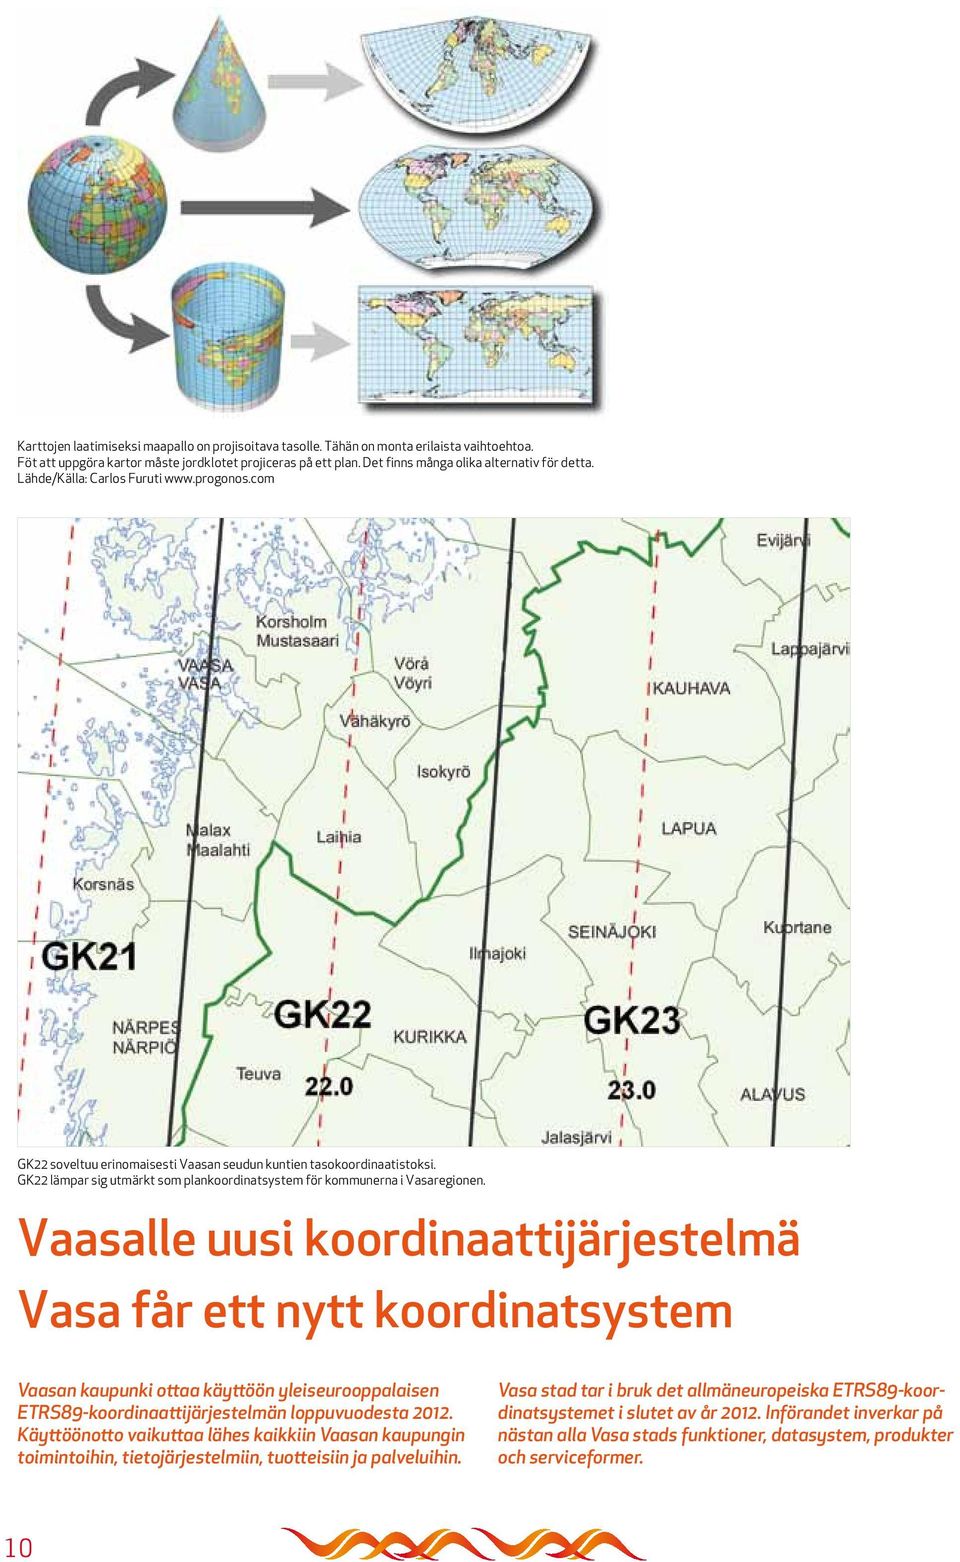 GK22 lämpar sig utmärkt som plankoordinatsystem för kommunerna i Vasaregionen.